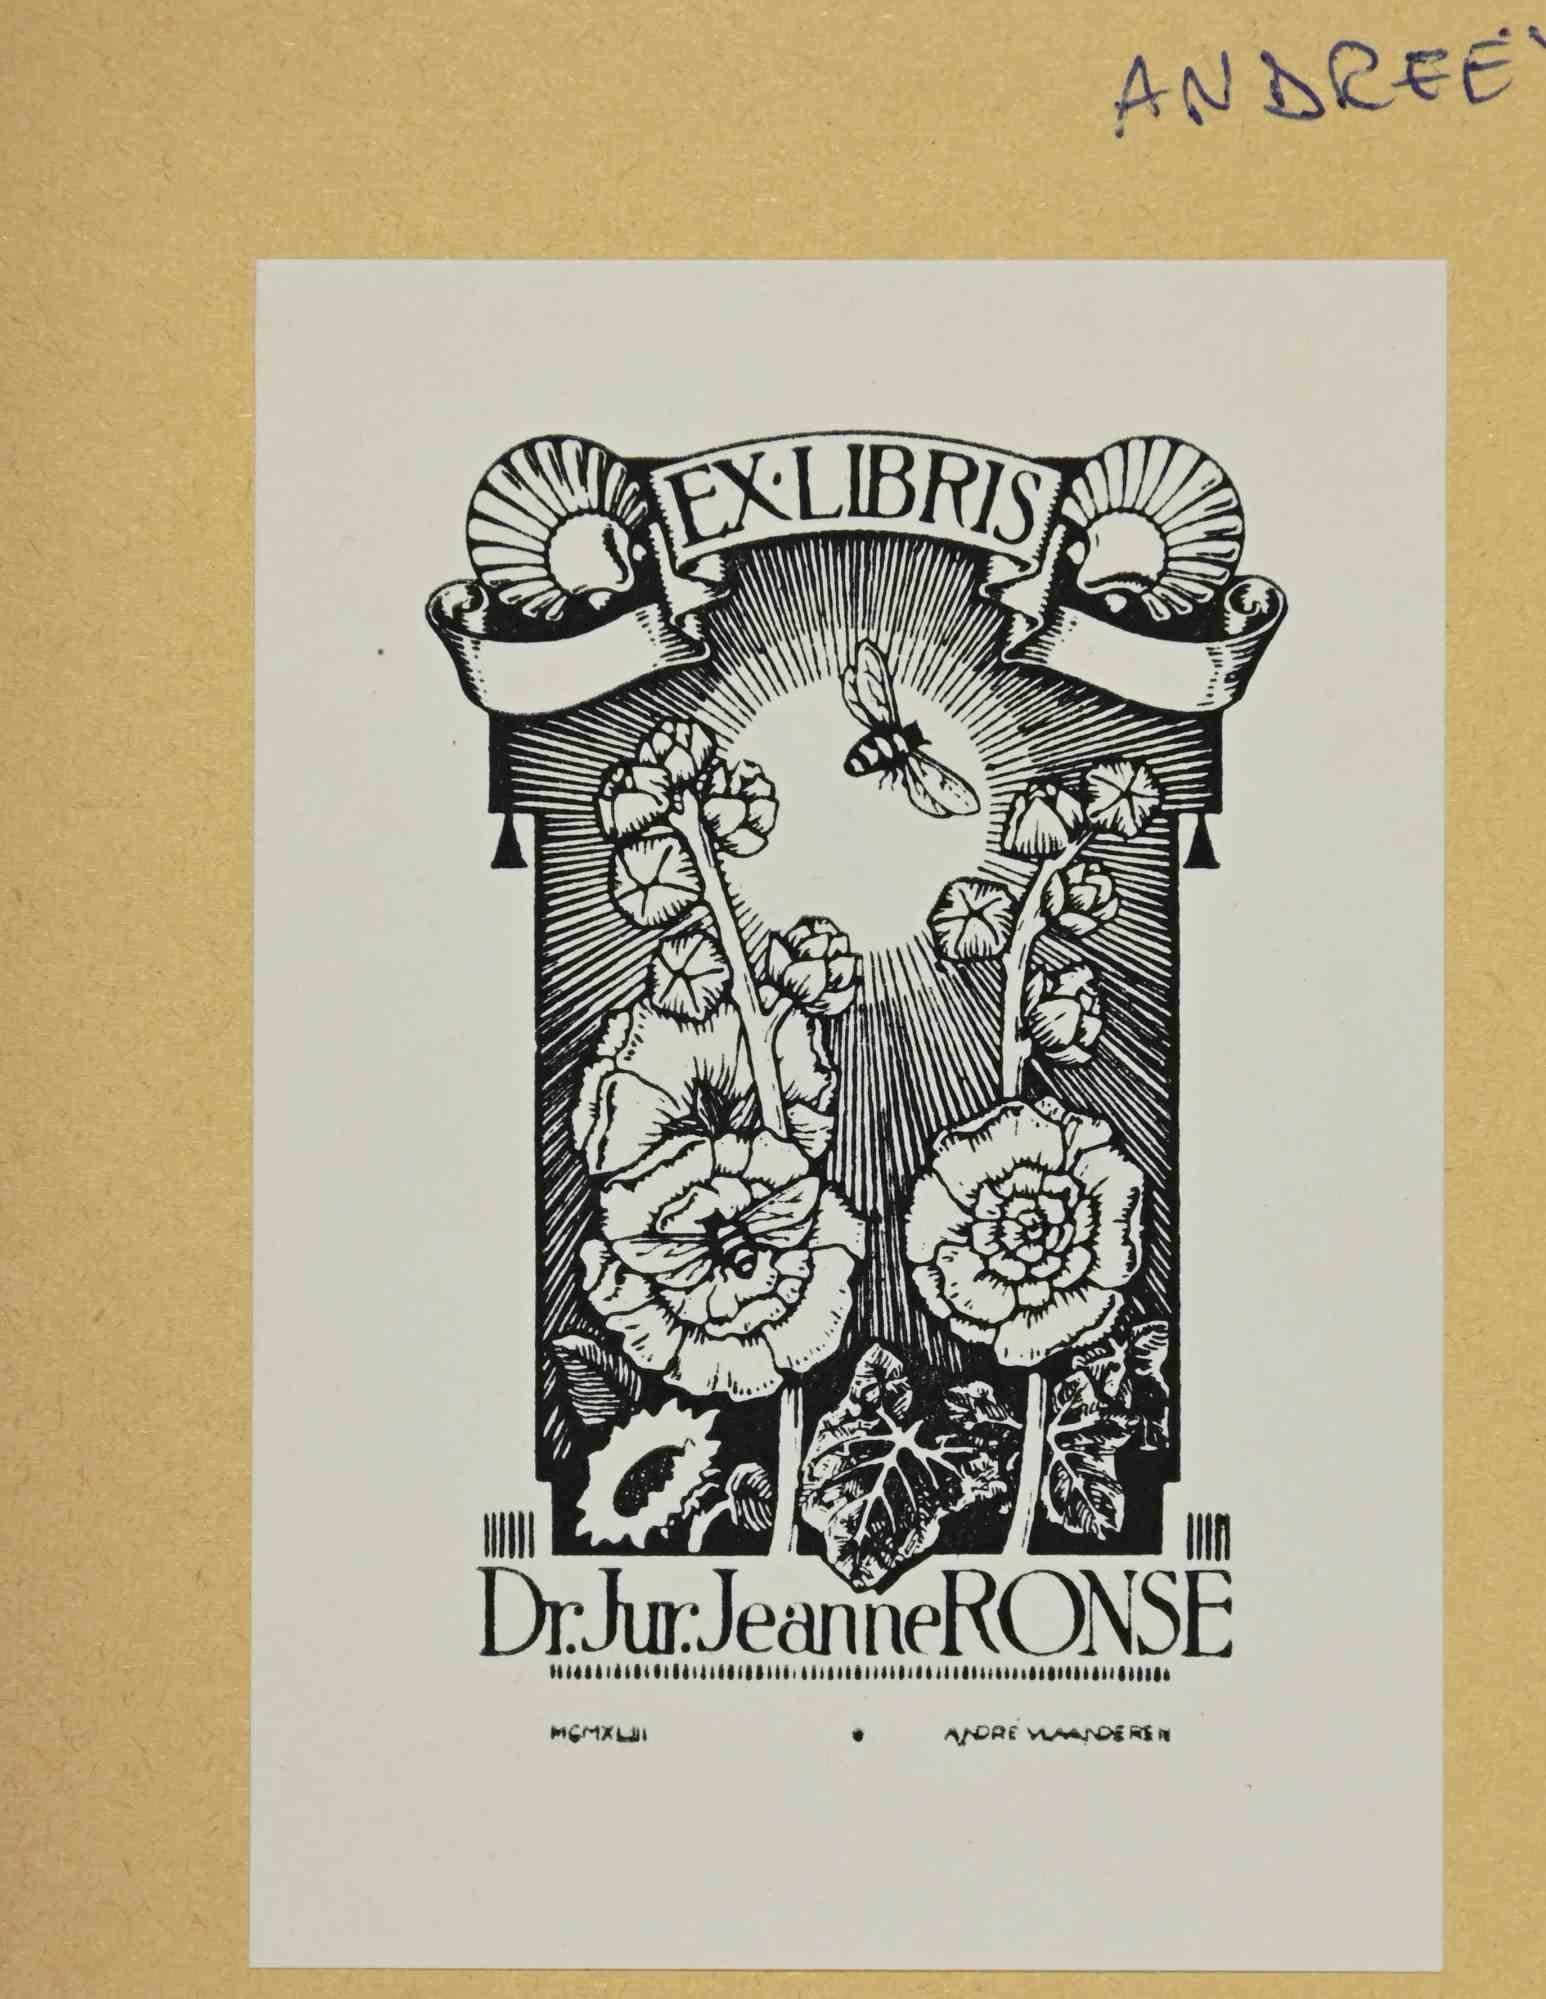 Ex Libris - Dr. Jur. Jeanne Ronse ist ein Kunstwerk, das 1943 von dem Künstler André Vlaanderen (1881-1955) geschaffen wurde.

Holzschnitt B./W. Druck auf Papier. Signiert auf der Platte in der rechten Ecke.

Das Werk ist auf farbigen Karton